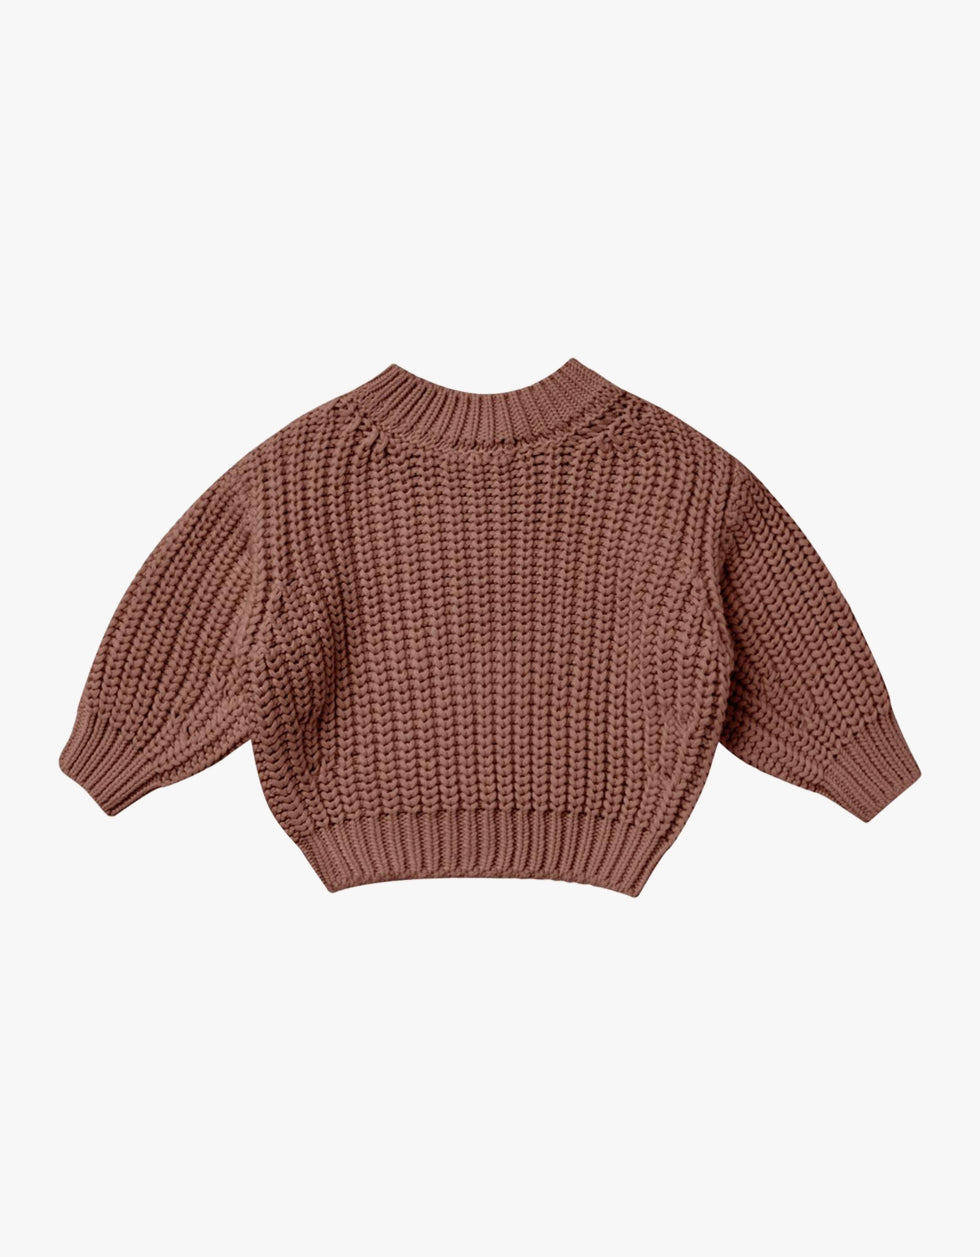 Sweater de malha grossa | Pecan